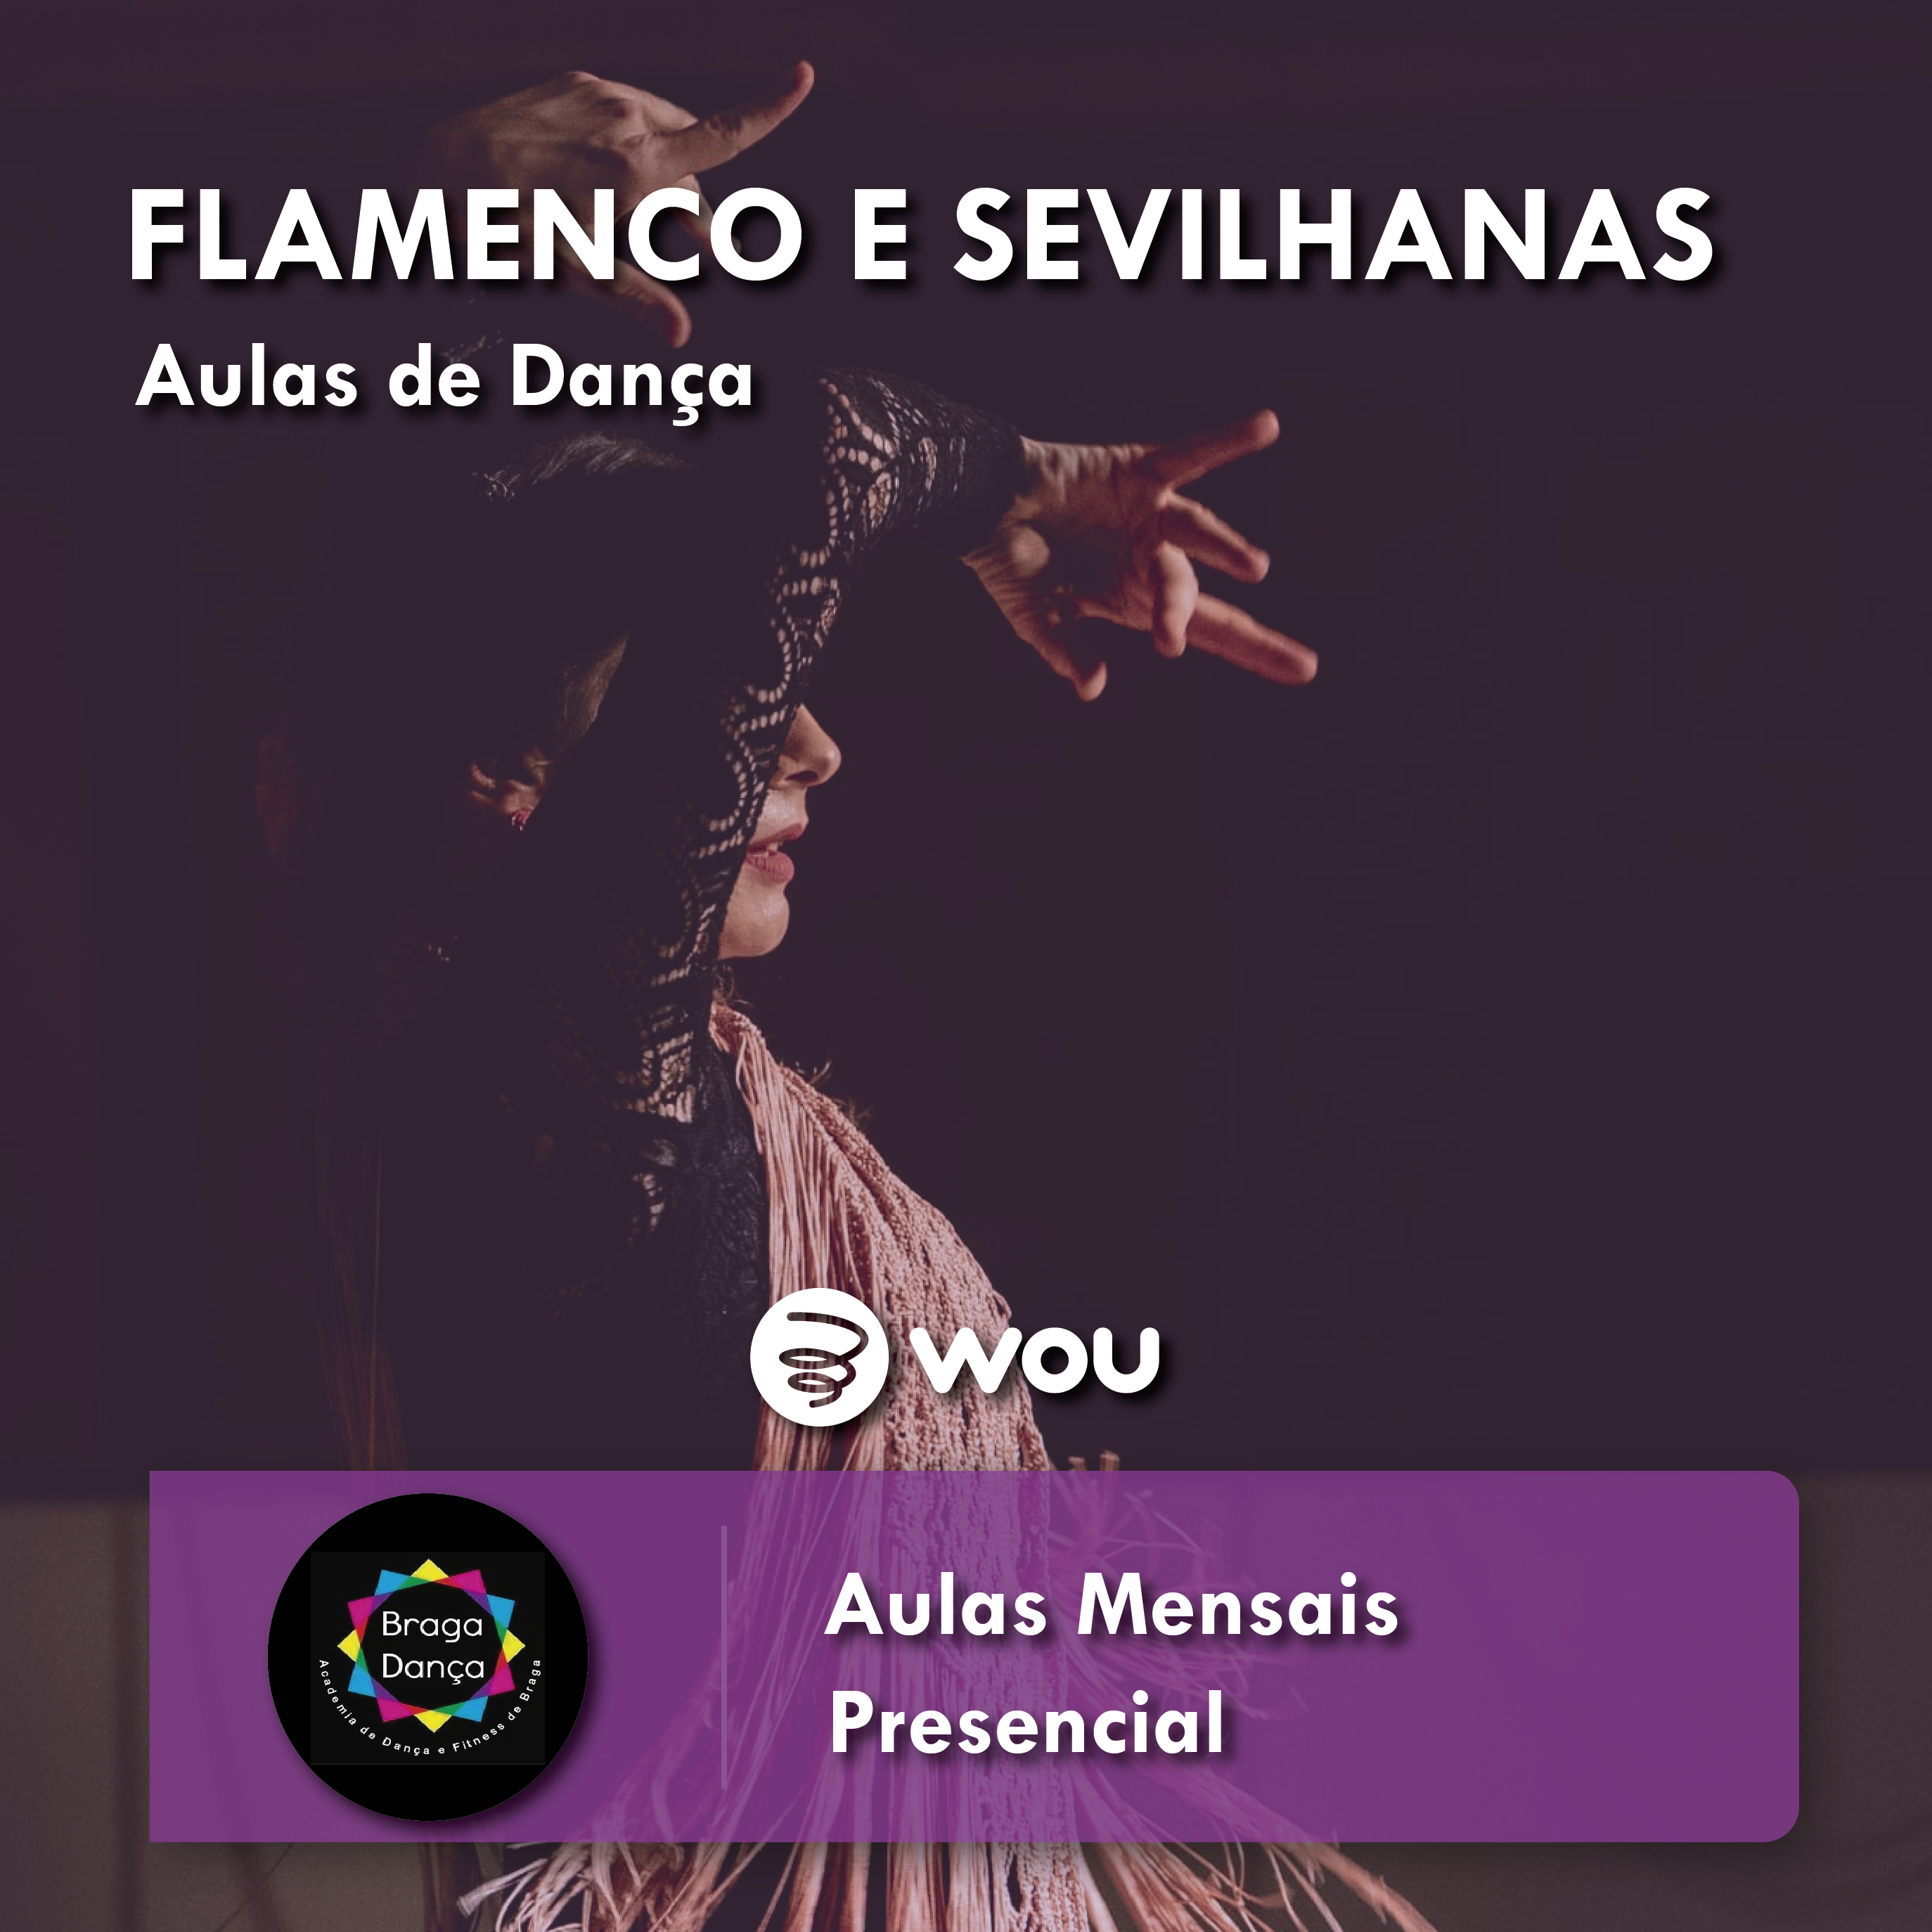 Flamenco and Sevillanas classes in Braga